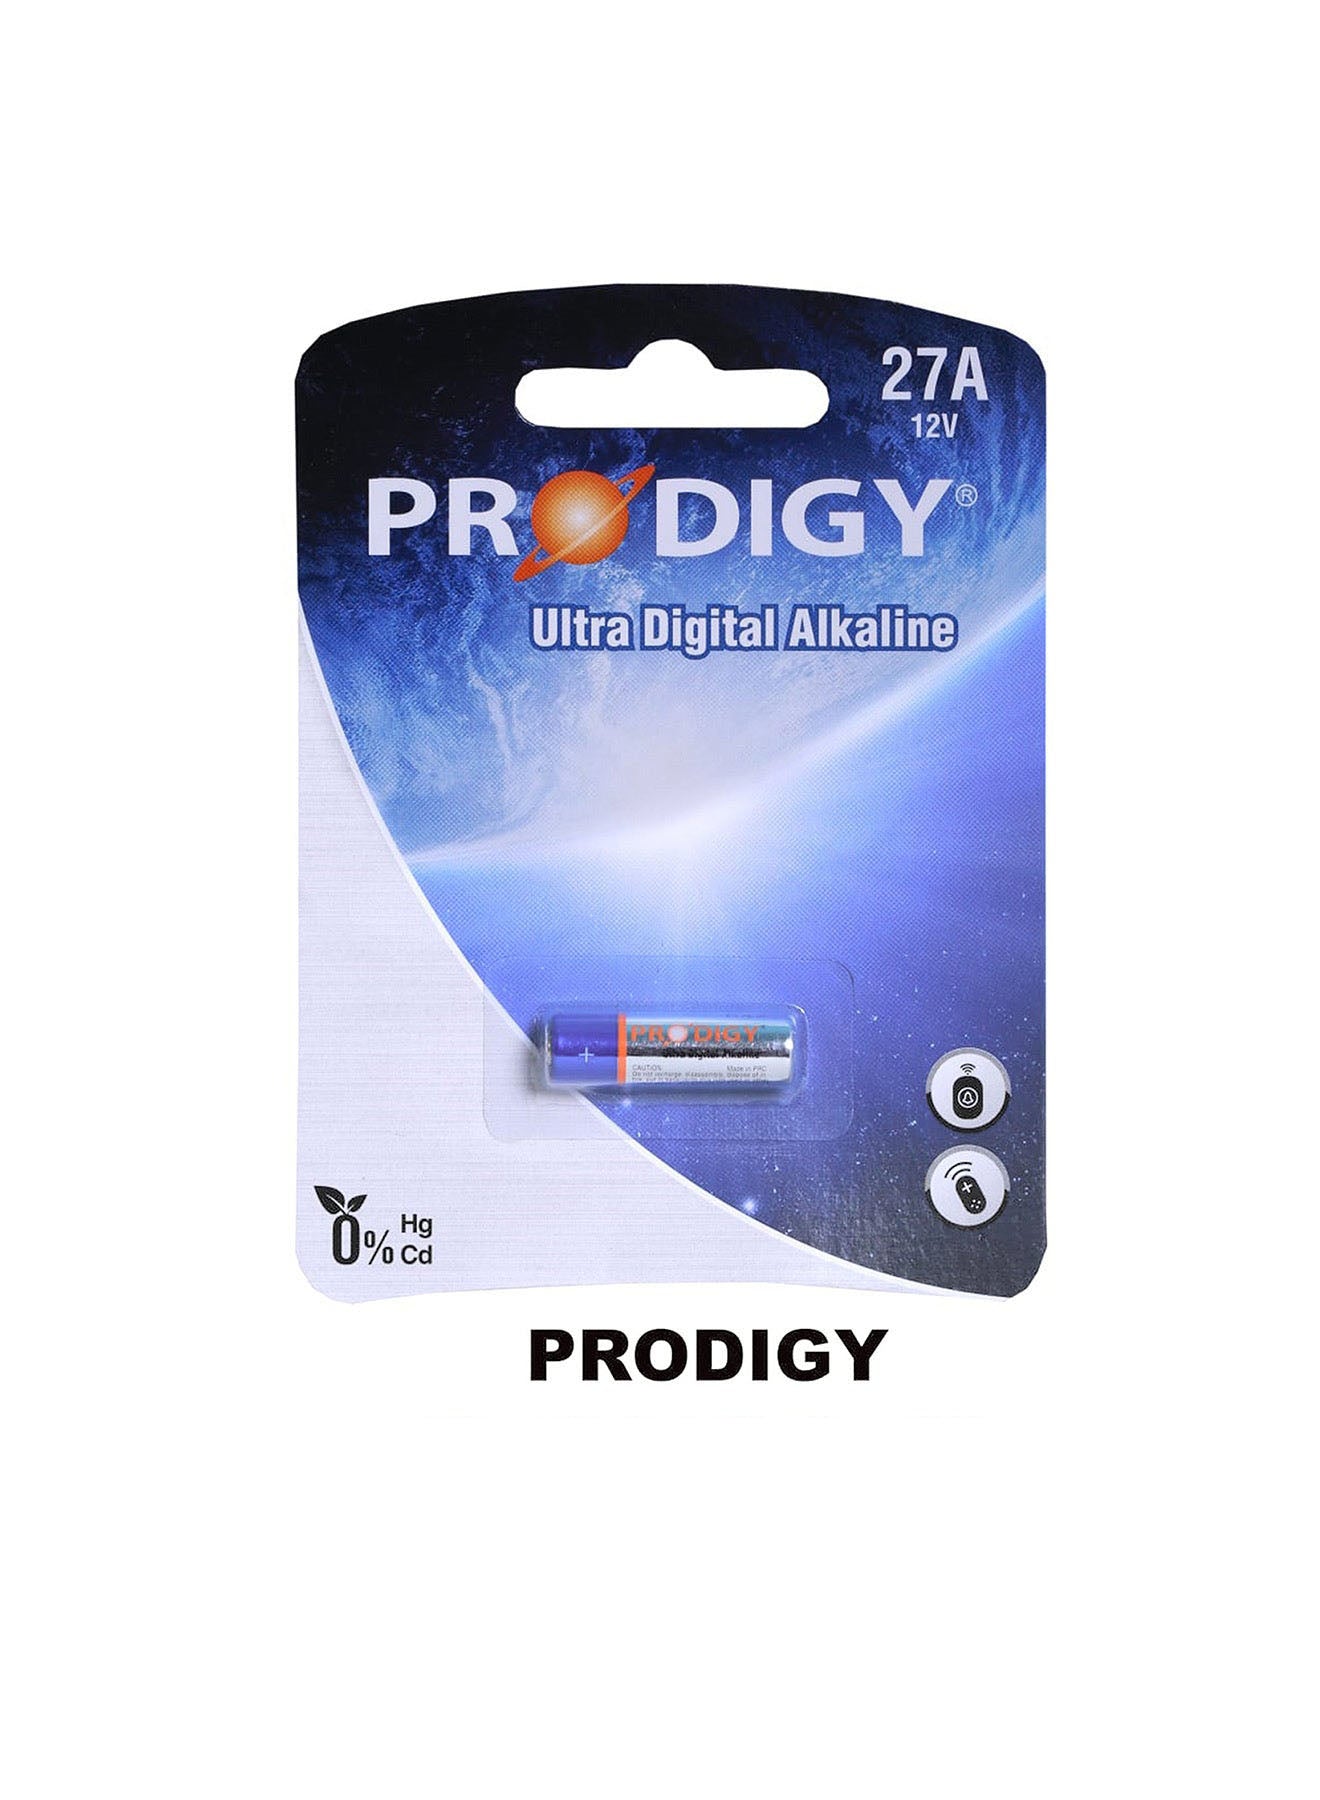 Prodigy Alkaline 27A 12V